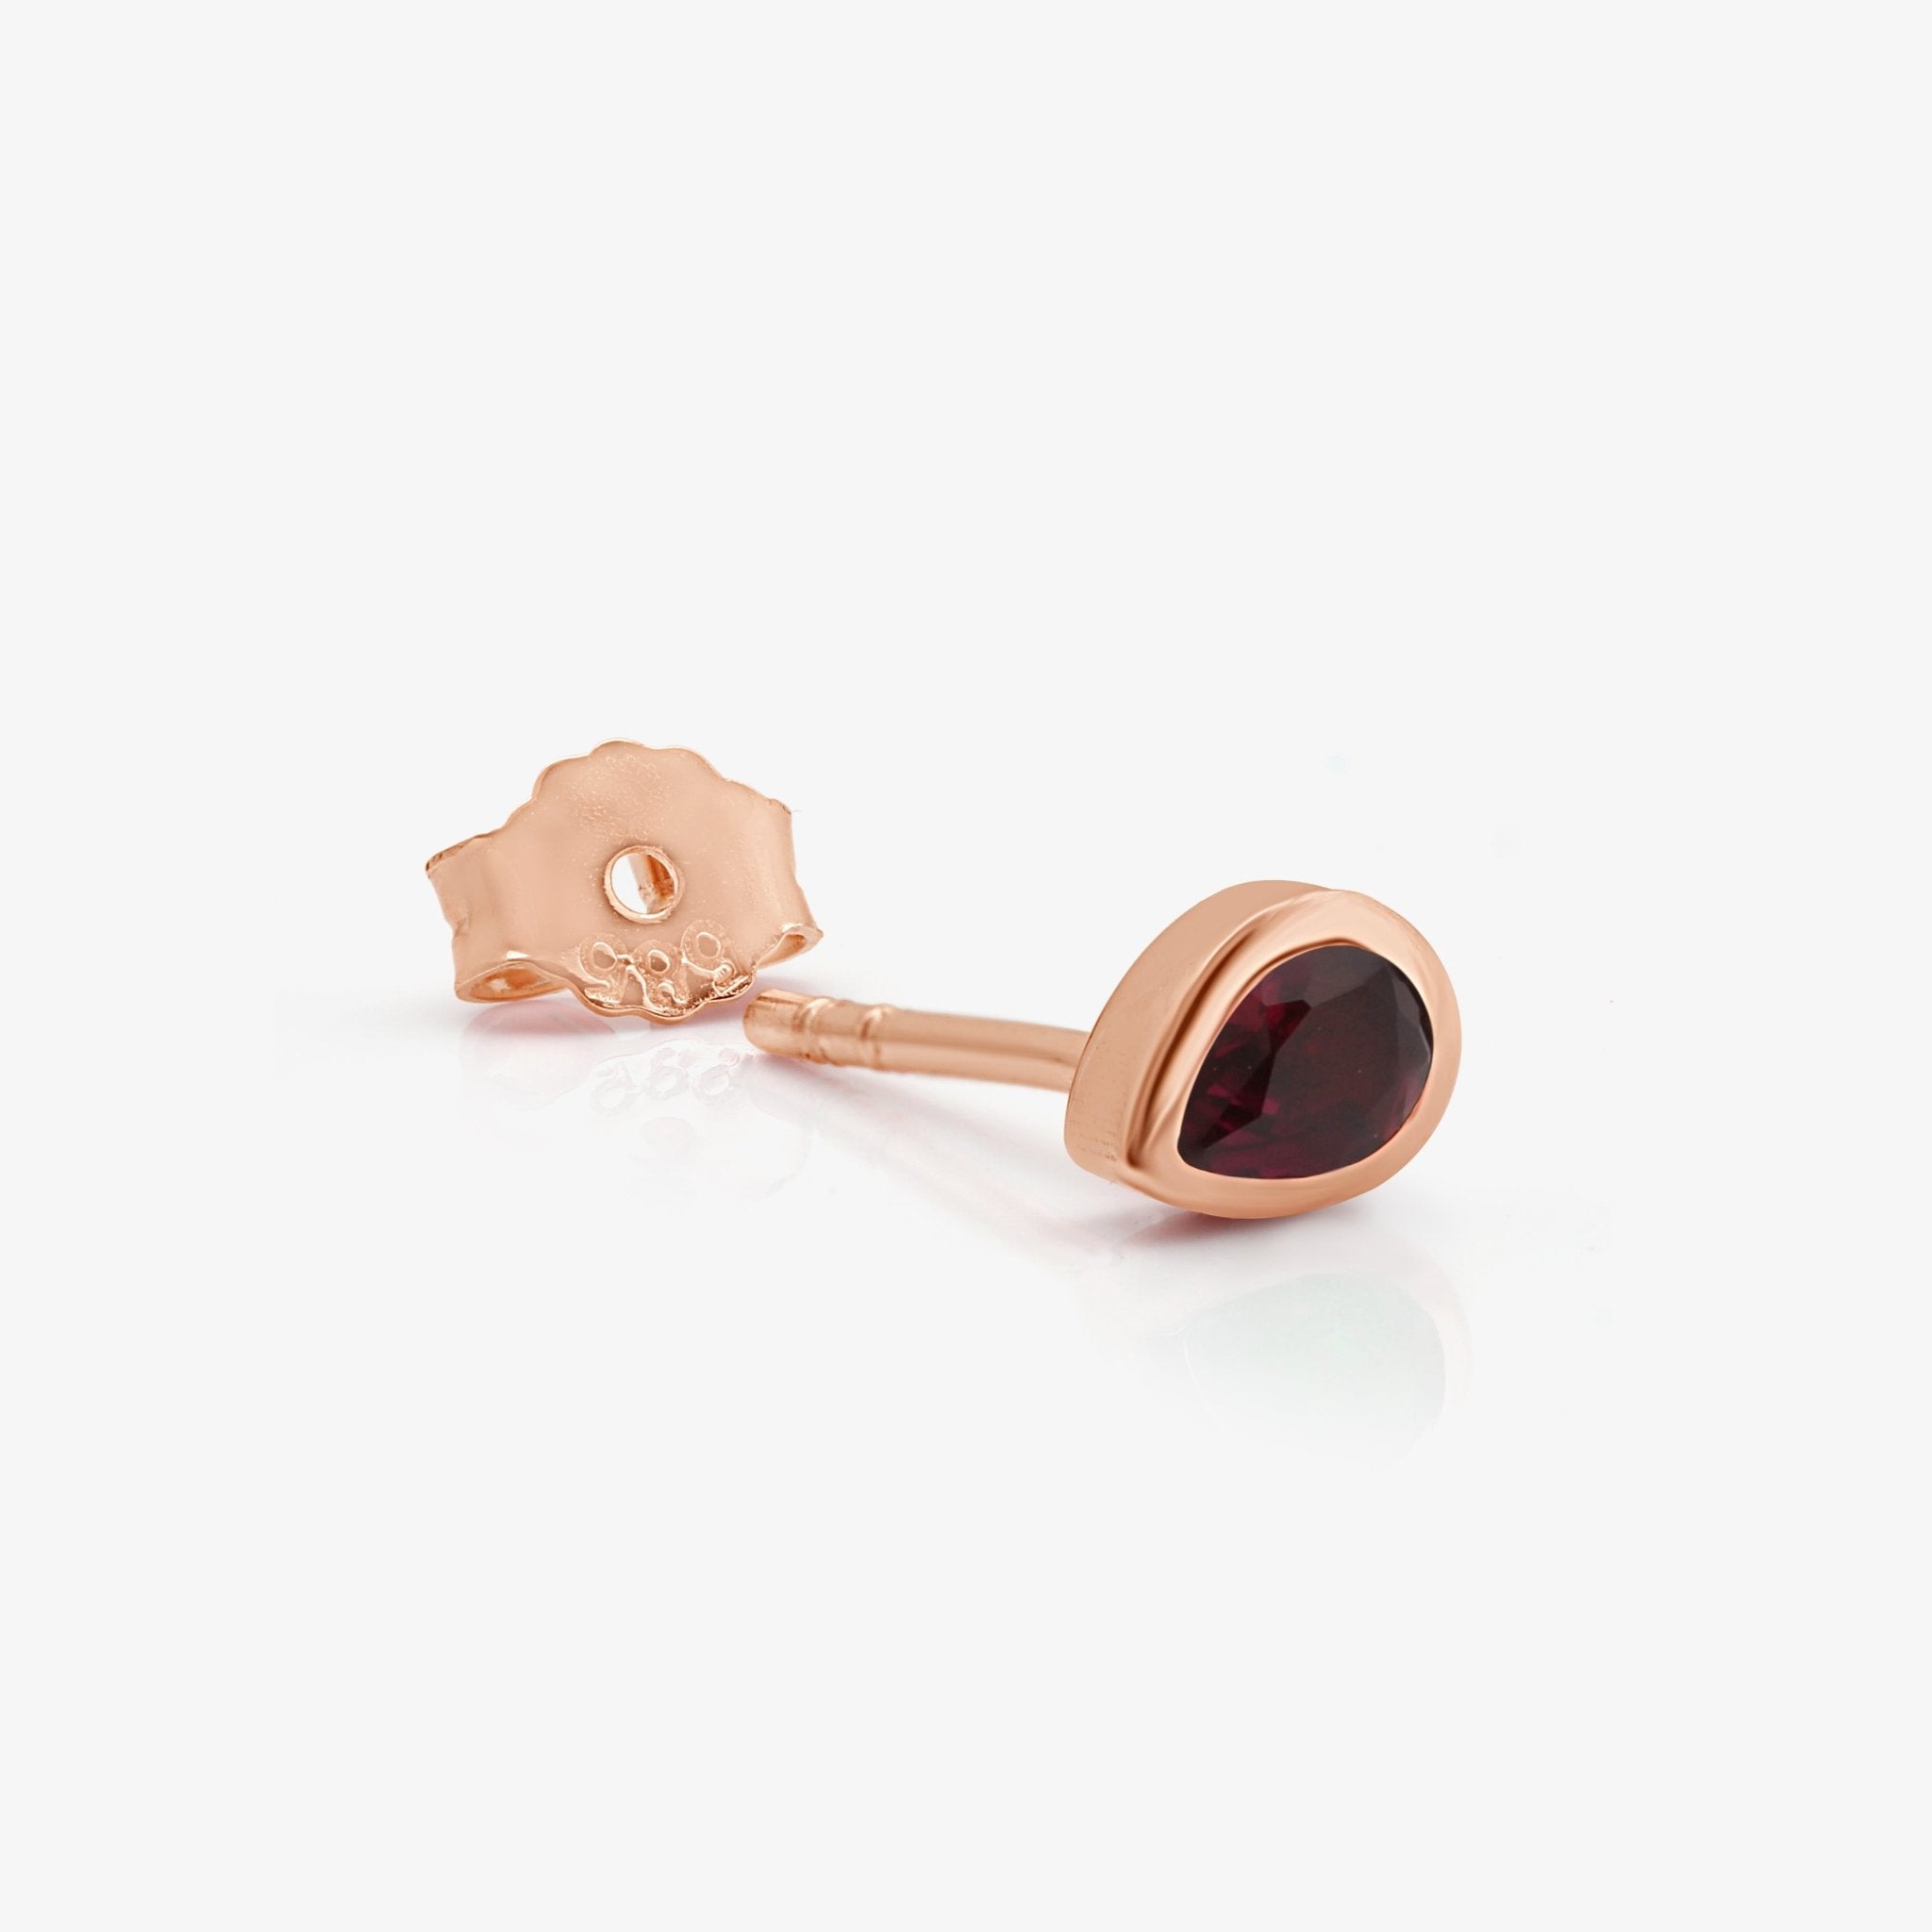 Pear Ruby Bezel Set Earring Earrings Estella Collection #product_description# 17989 14k Birthstone Earrings #tag4# #tag5# #tag6# #tag7# #tag8# #tag9# #tag10#